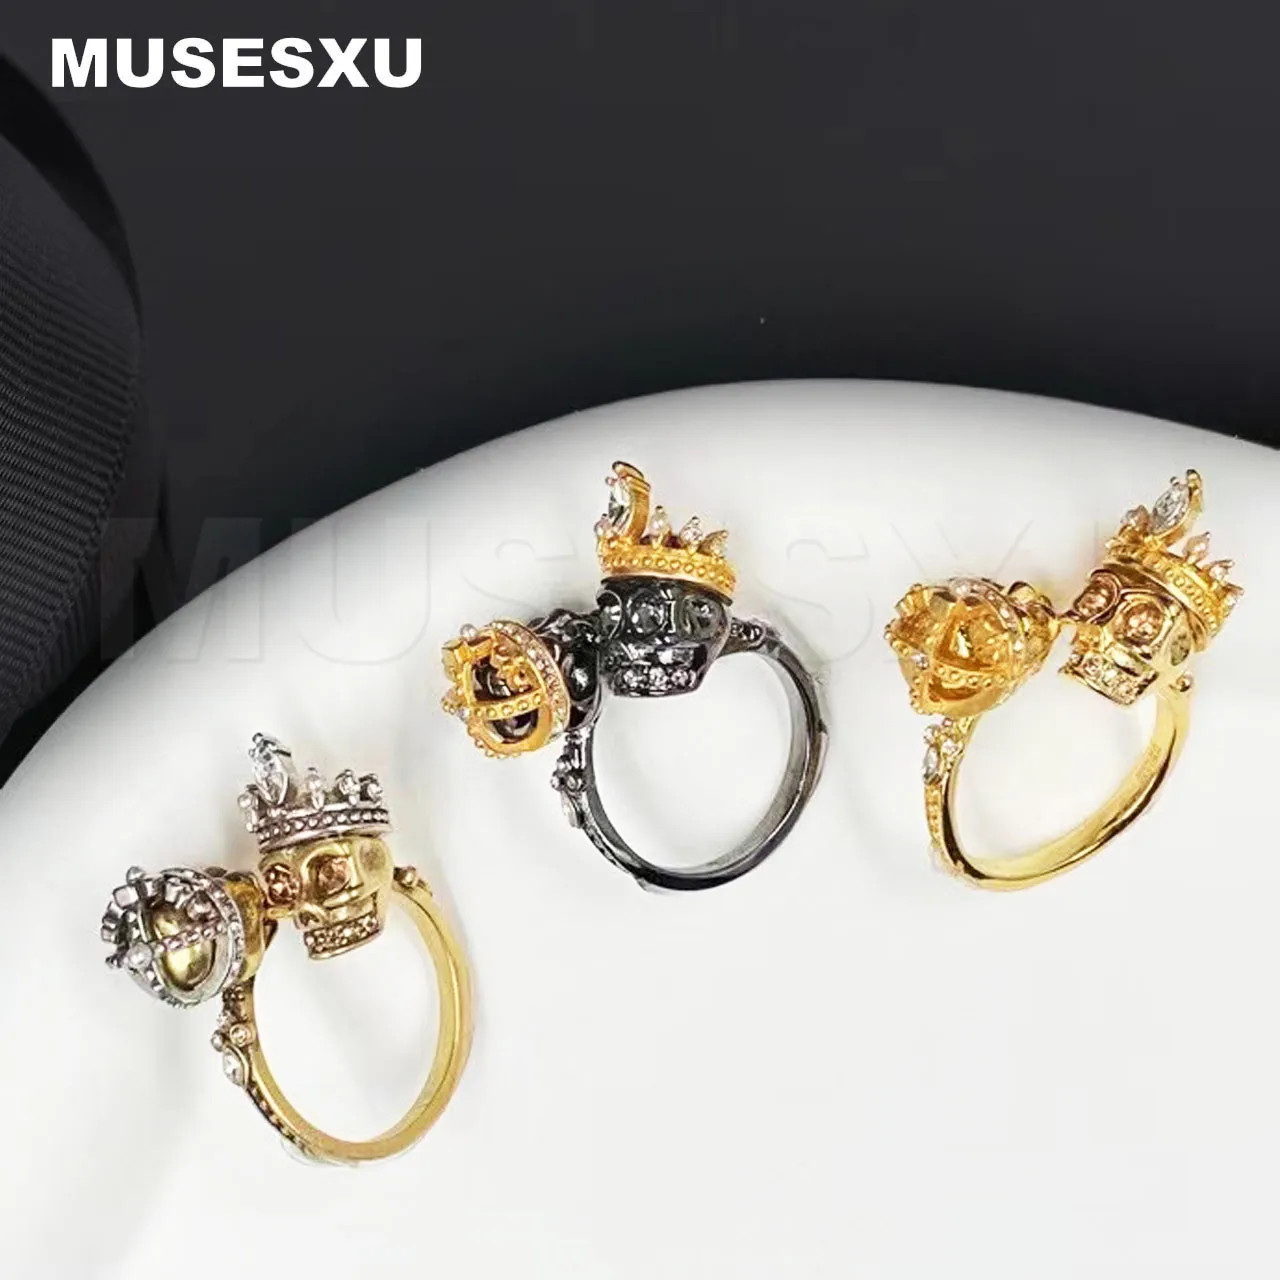 Joyería y accesorios de marca de lujo para hombres y mujeres, anillo abierto hueco tejido con calavera plateada, regalos de fiesta, 2022